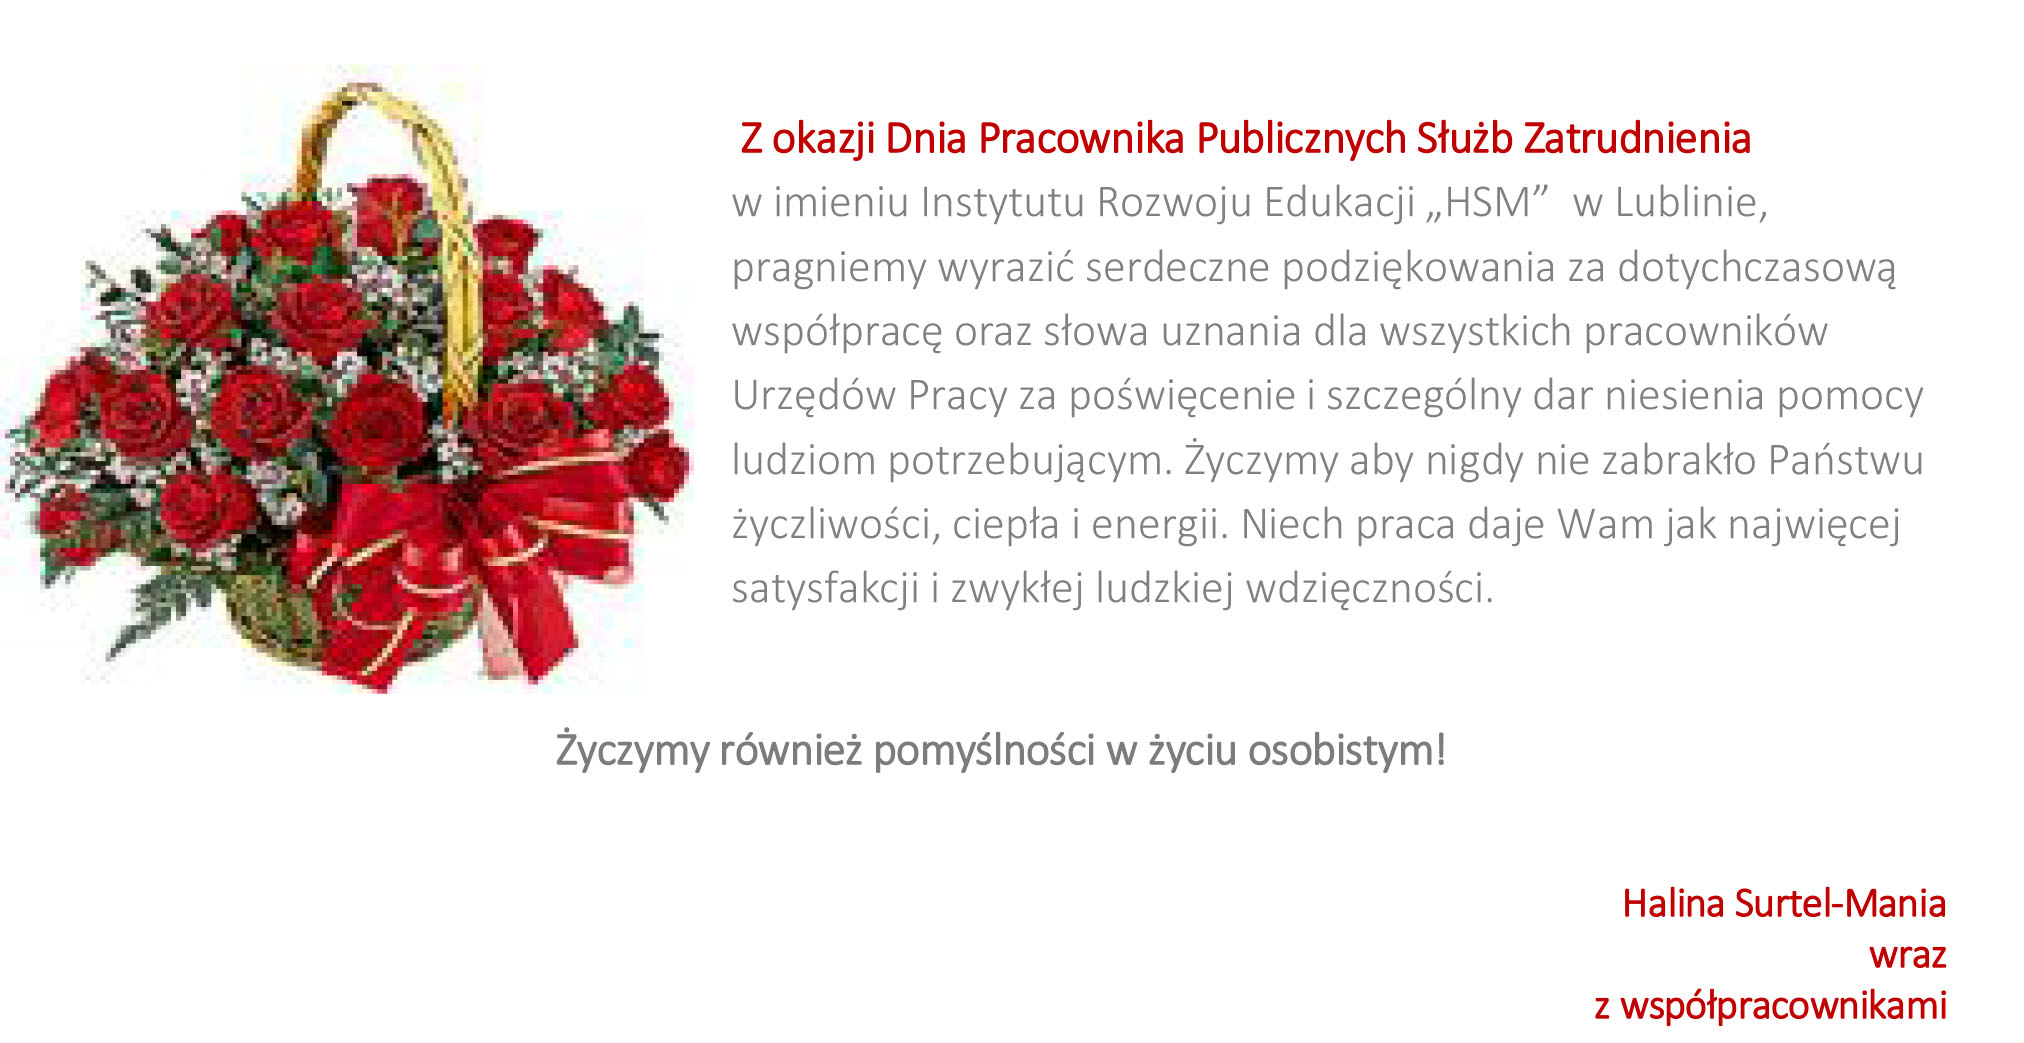 Życzenia z okazji Dnia Pracownika Publicznych Służb Zatrudnienia od HSM w Lublinie